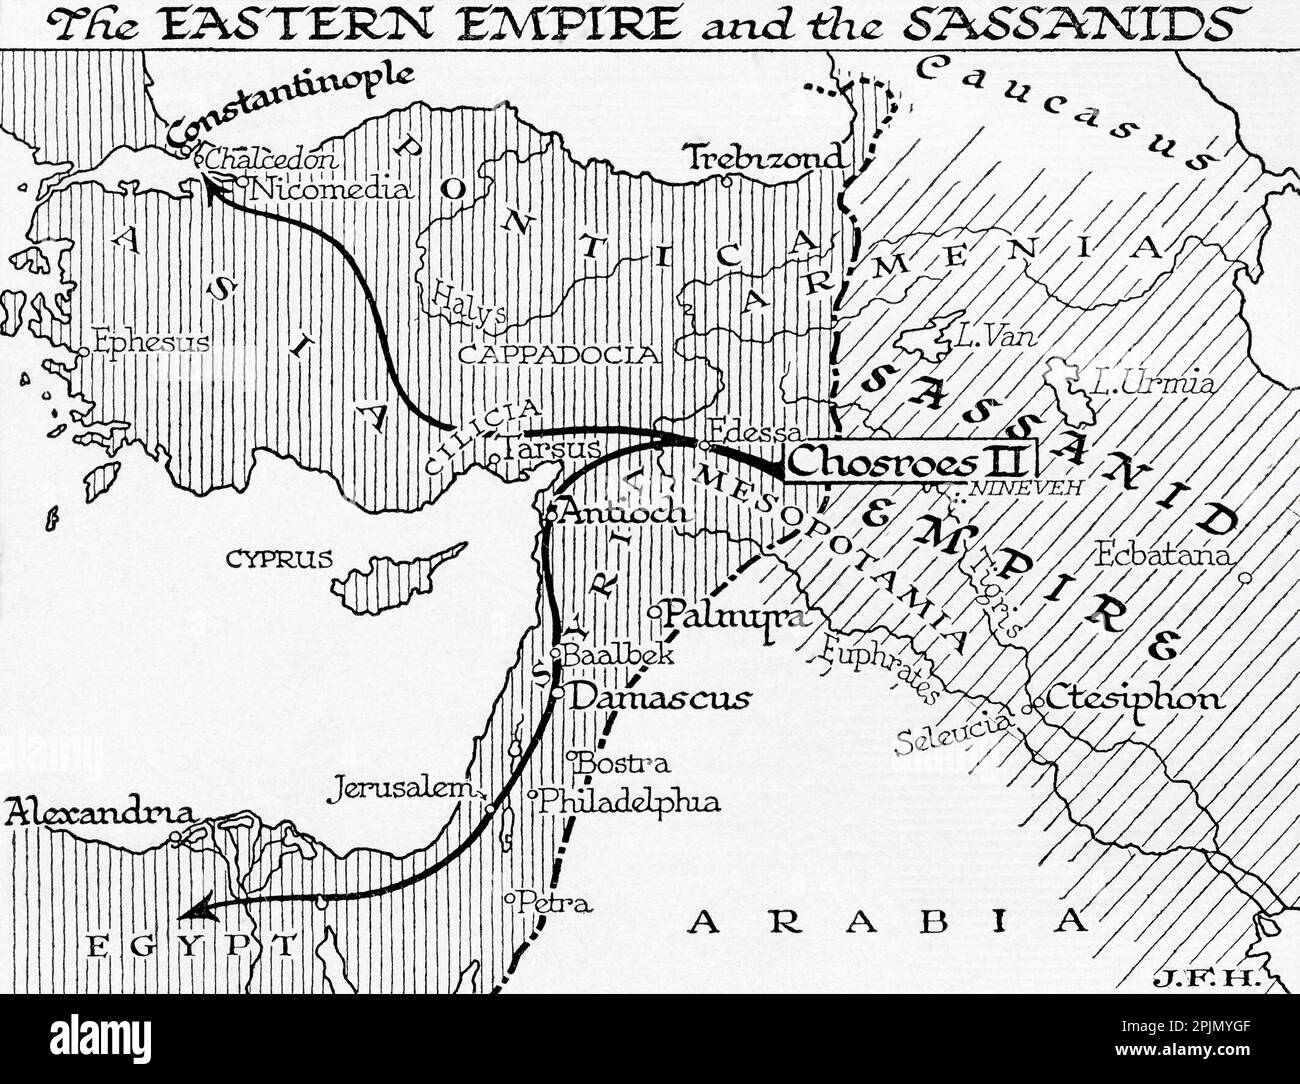 Karte des östlichen Reiches und der Sassaniden, 7. Jahrhundert. Aus dem Buch Outline of History von H.G. Wells, veröffentlicht 1920. Stockfoto